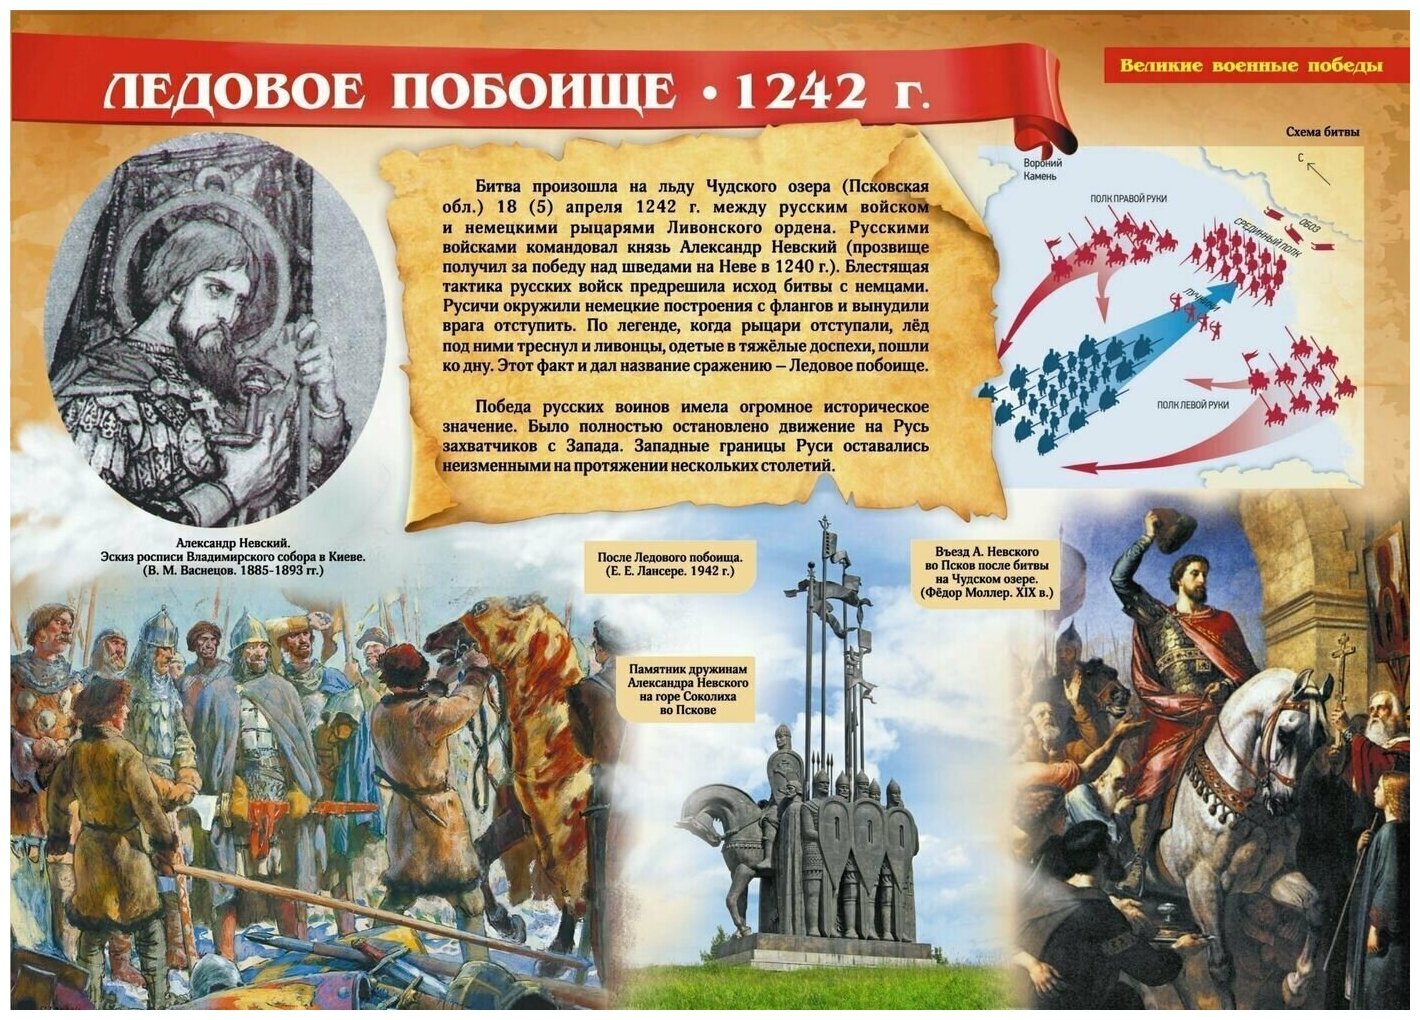 Комплект плакатов "Великие военные победы". 16 плакатов с методическим сопровождением. - фото №11